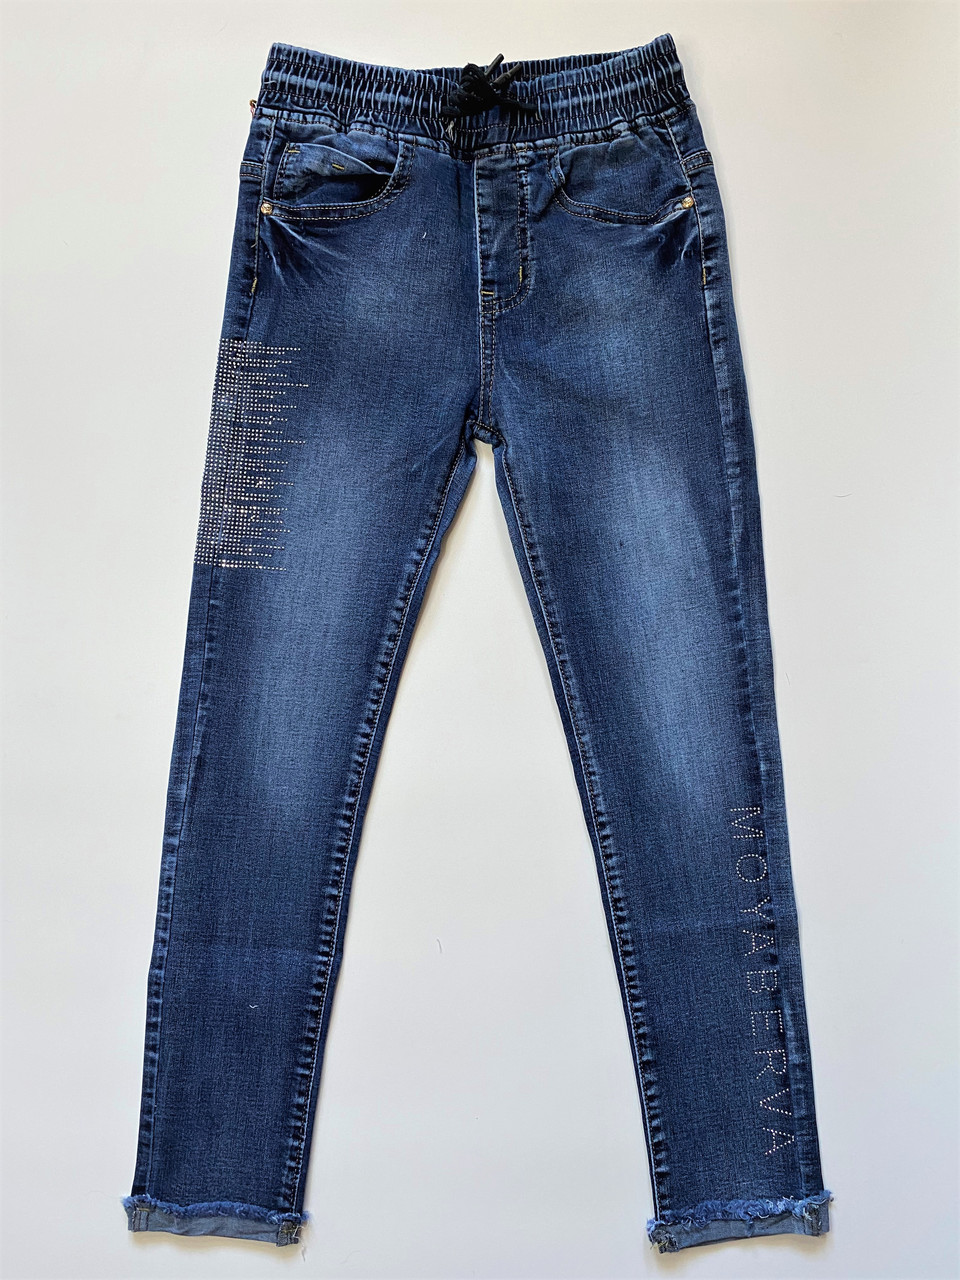 Брюки джинсові для дівчаток на гумці на зріст від 110 до 134 см модель